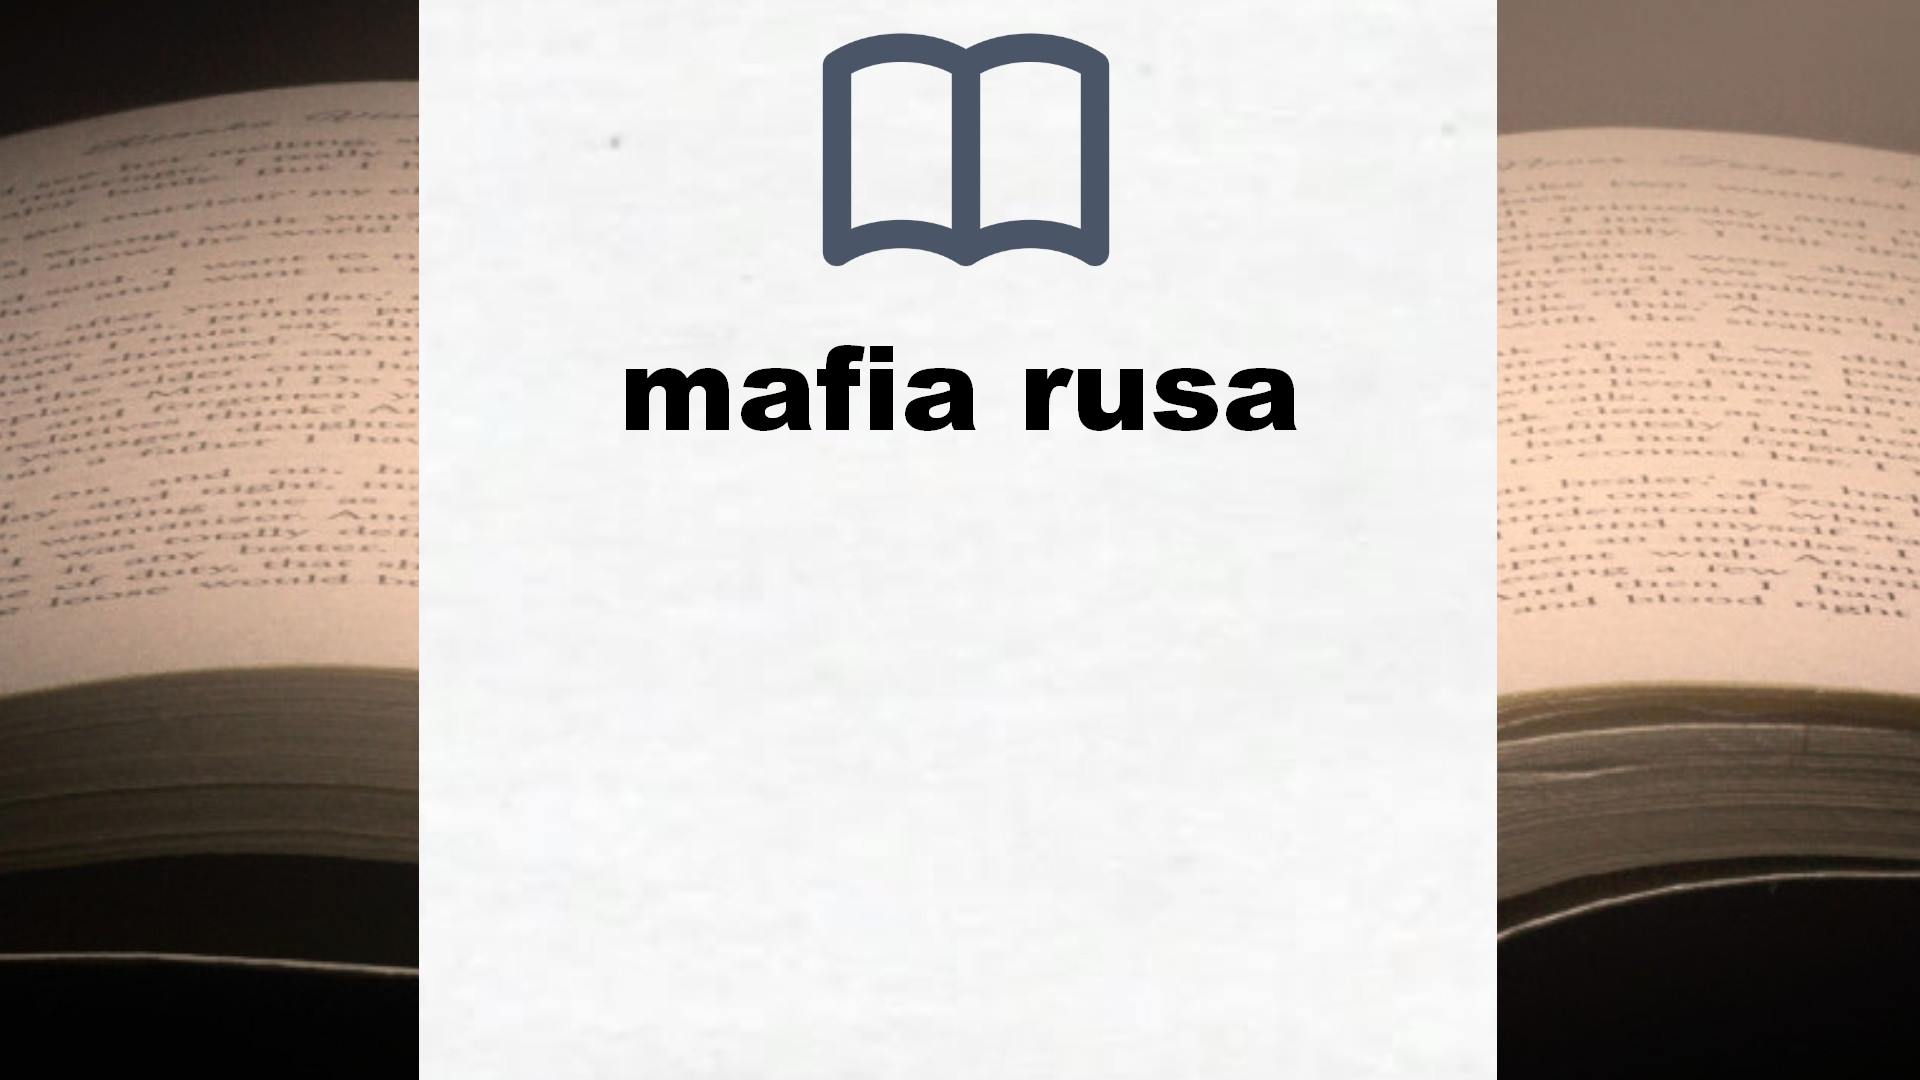 Libros sobre mafia rusa